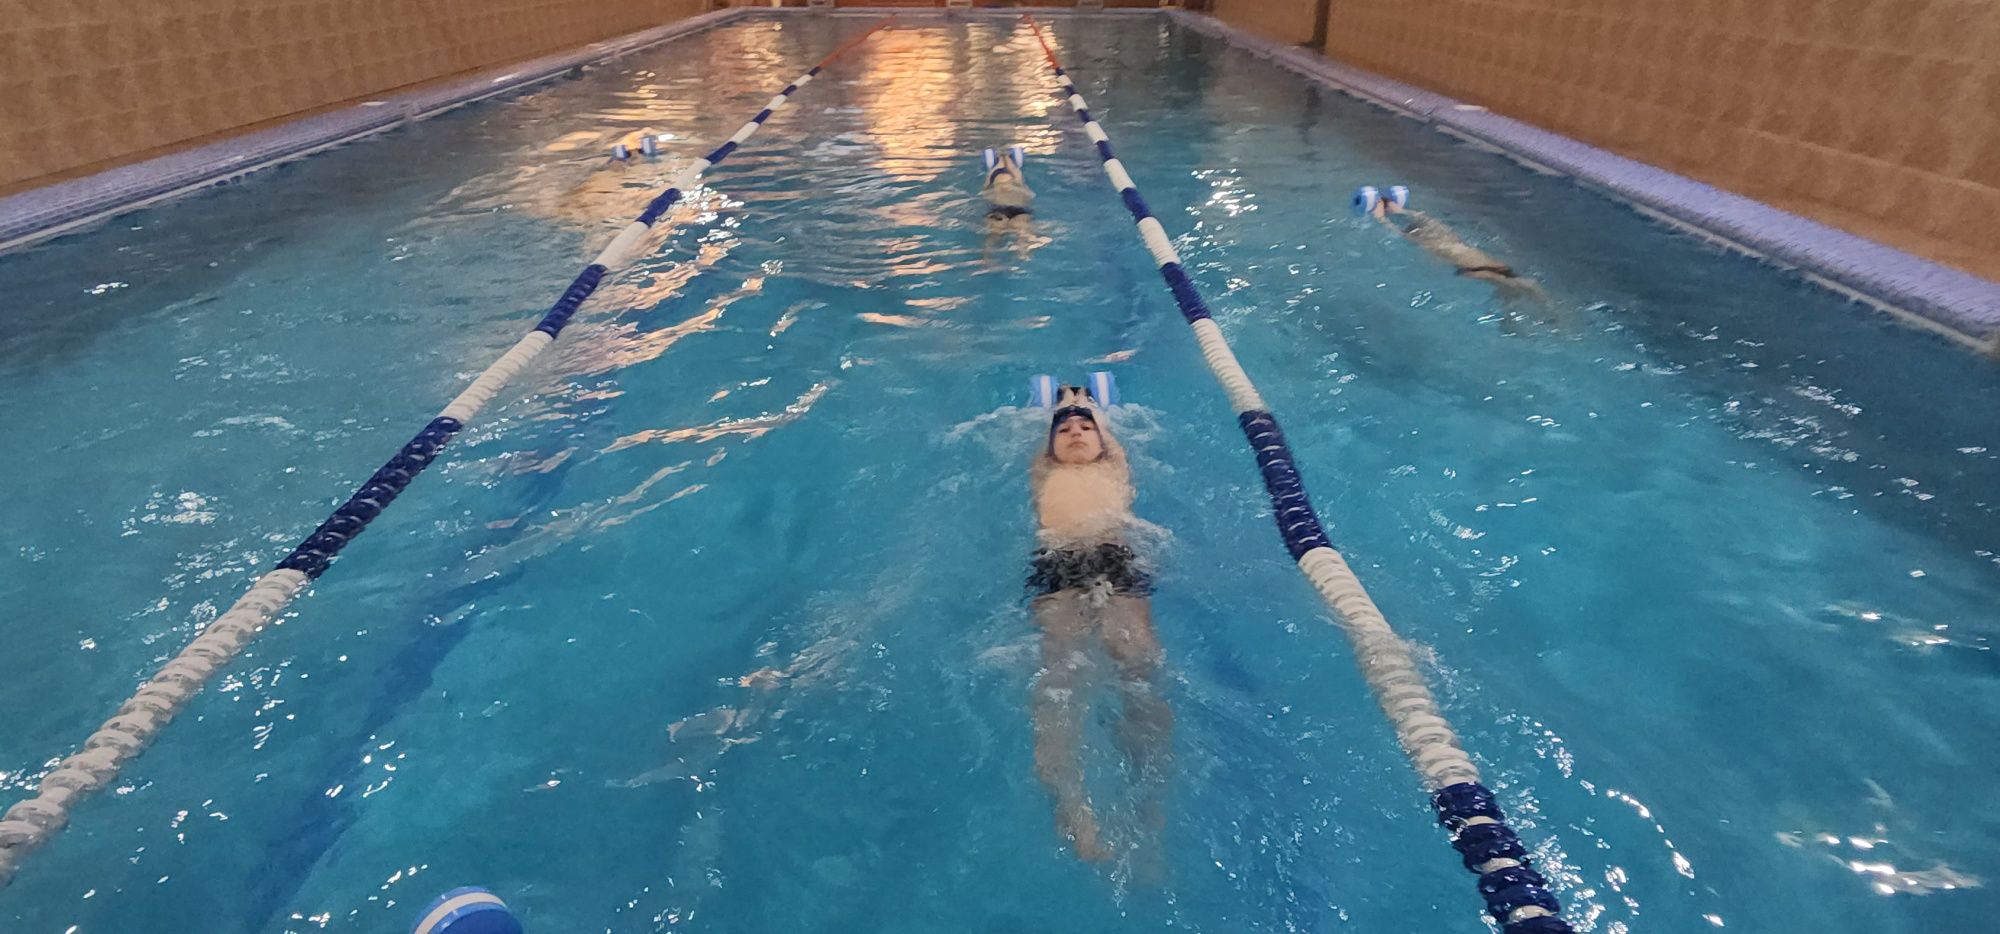 Плавание  в зимним крытом бассейне  на Лисунова 4 кв подробнее  по тел